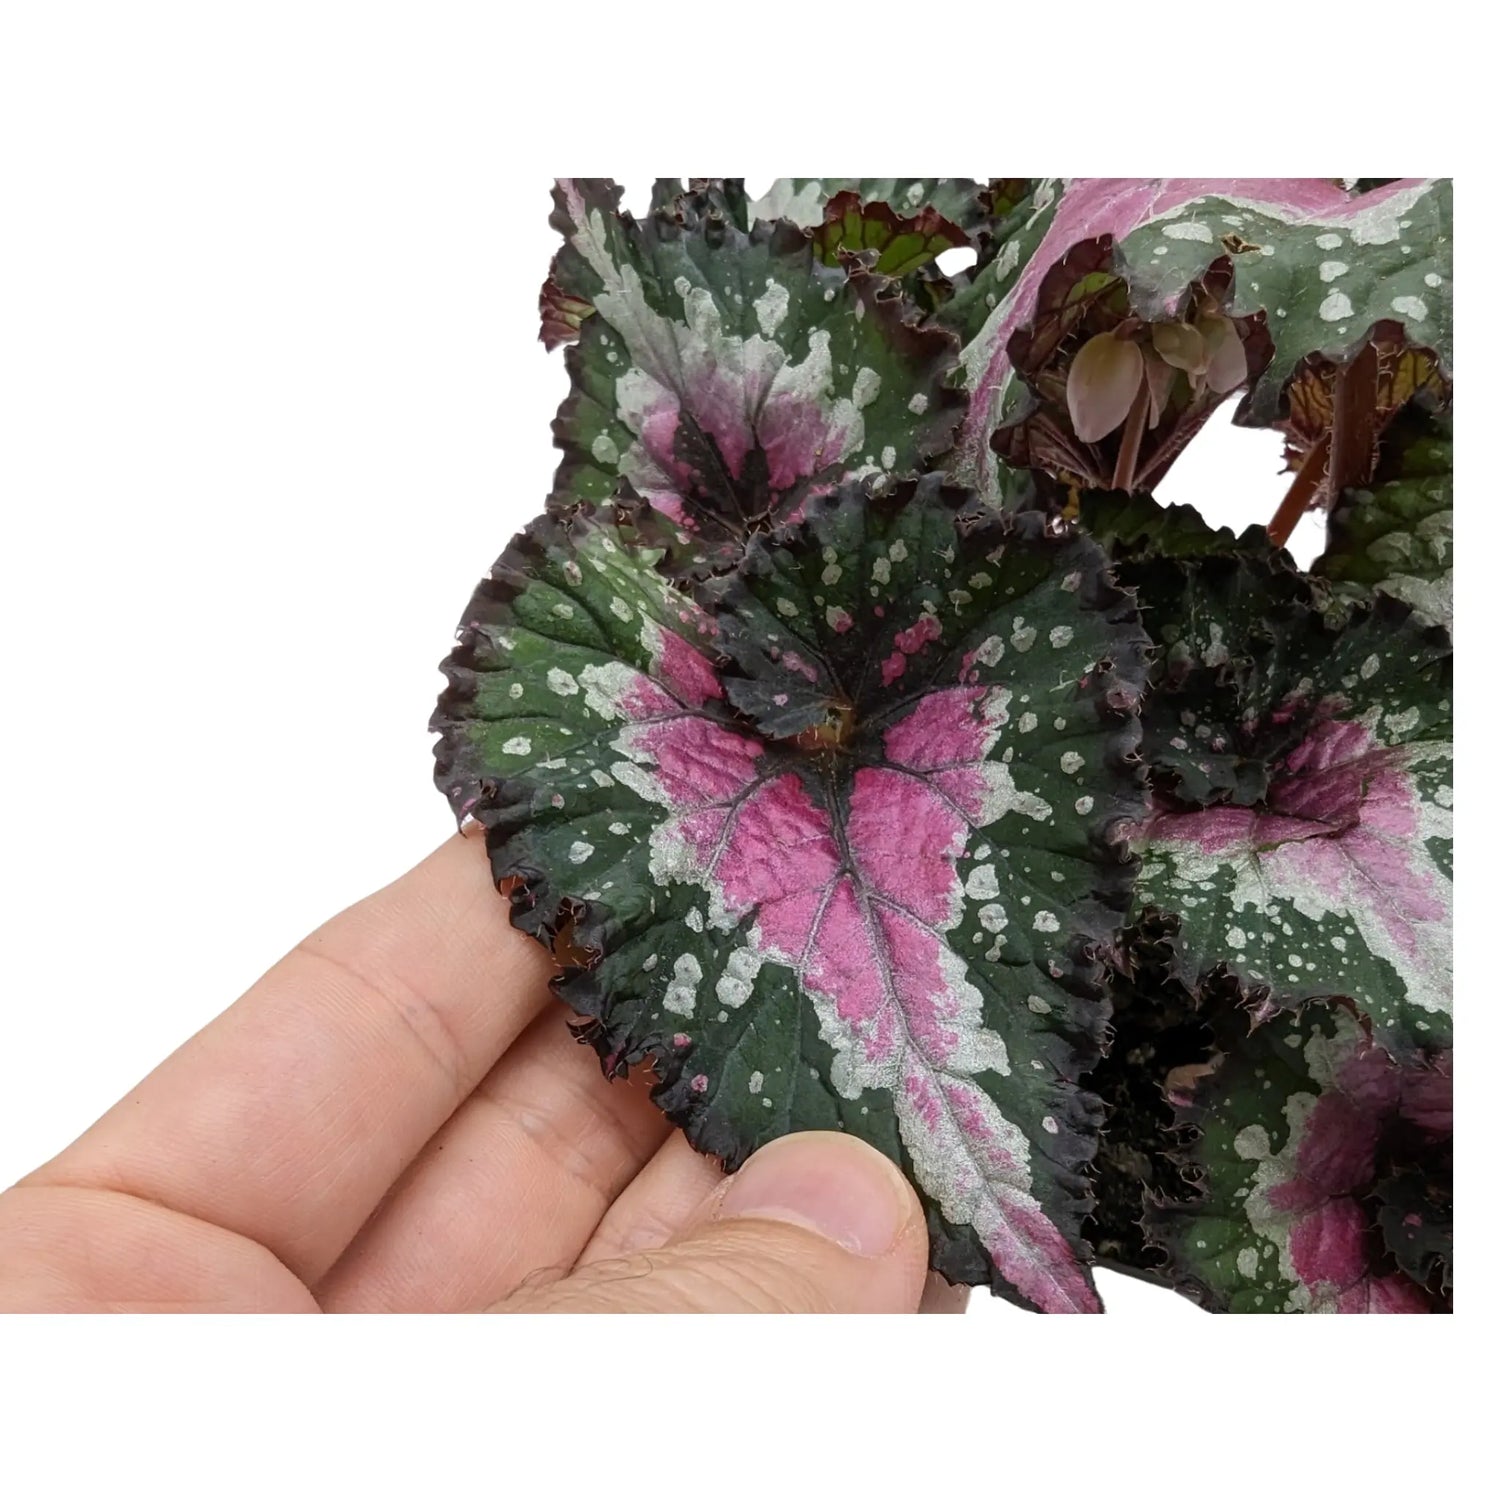 Begonia Rex Purple Blush Leaf Culture